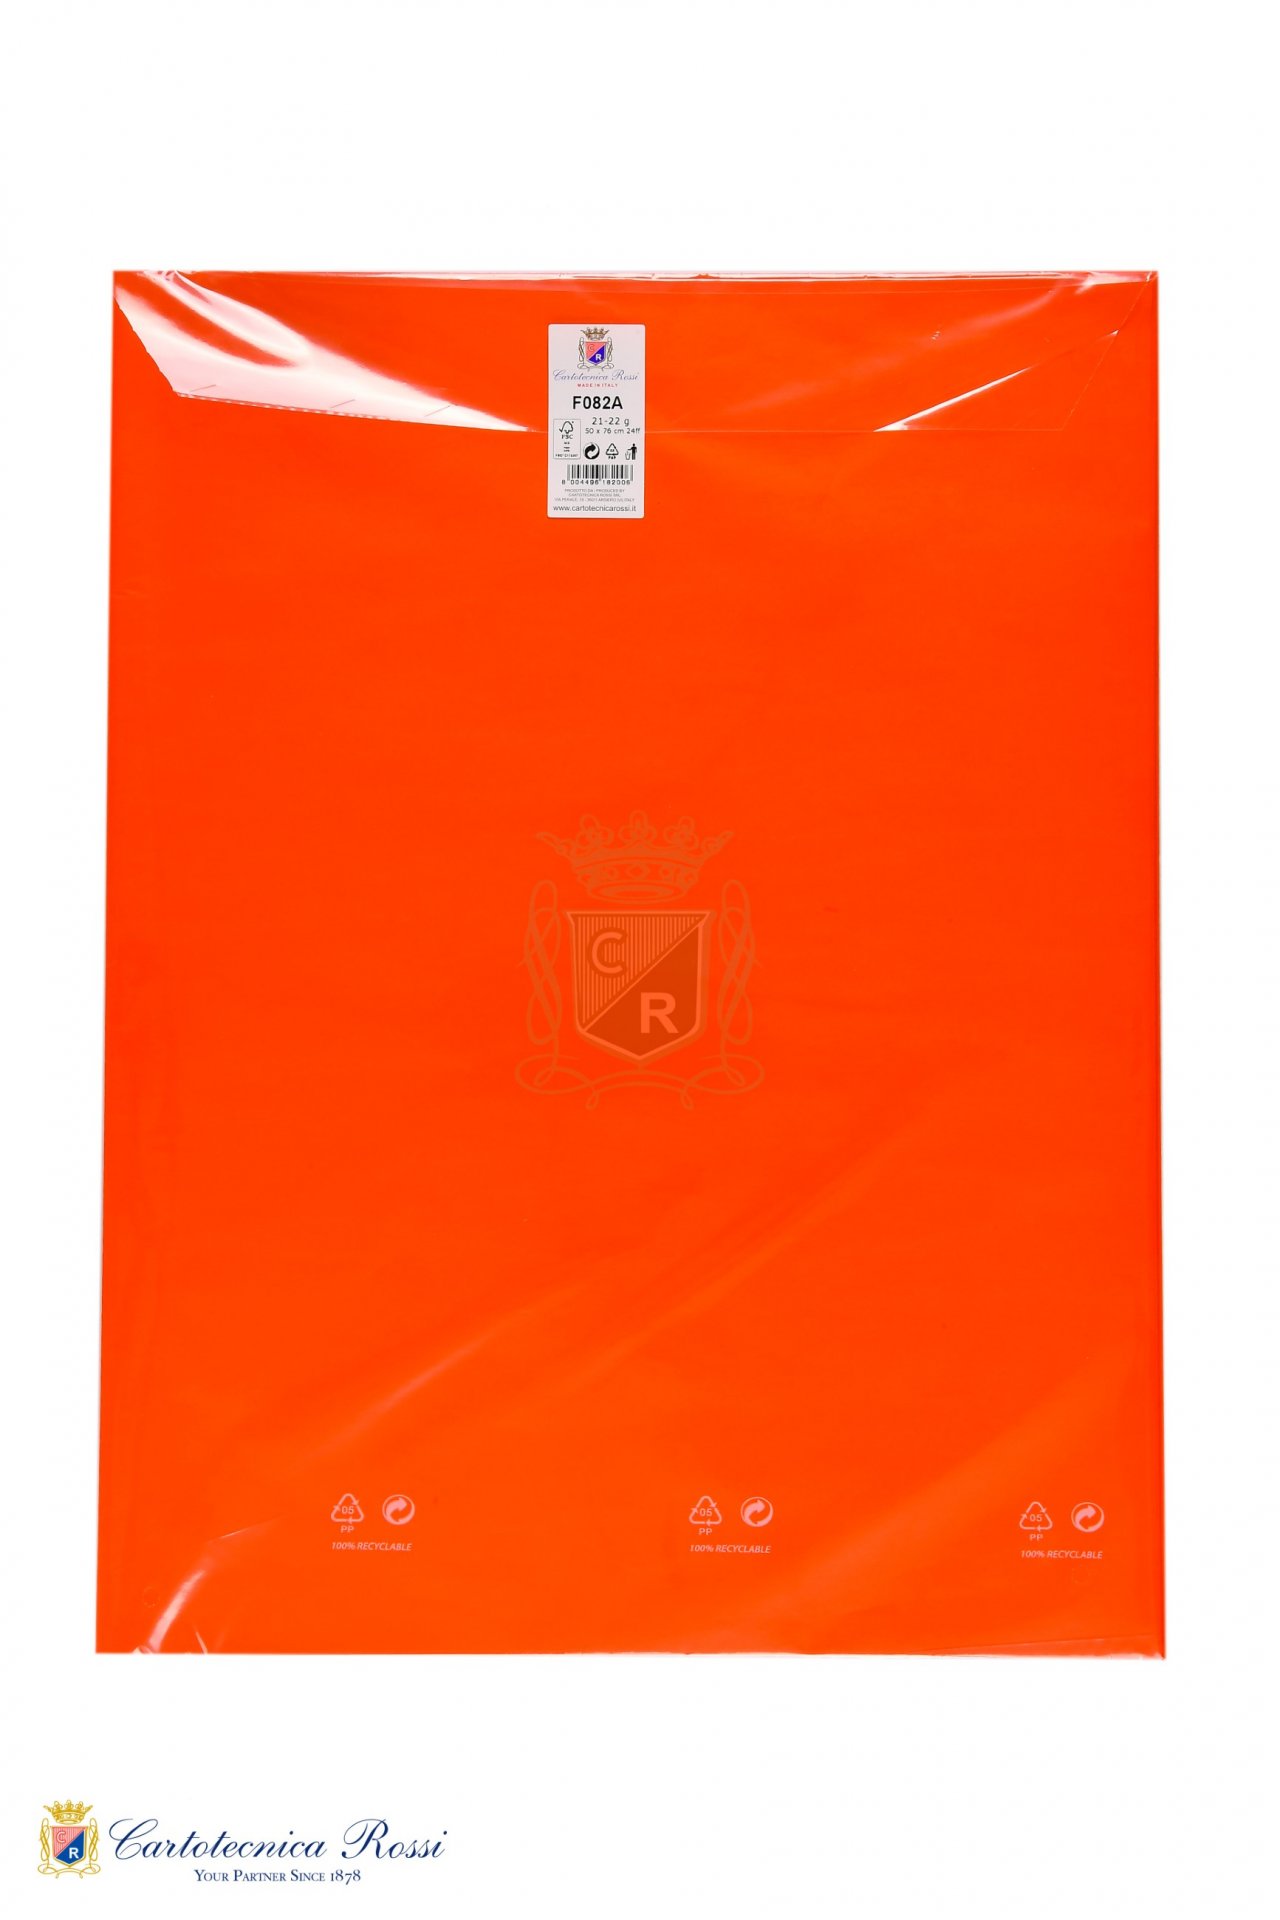 Veline Colorate 21g/m² in Blister da 24ff 50x76cm pieg. - Arancione 